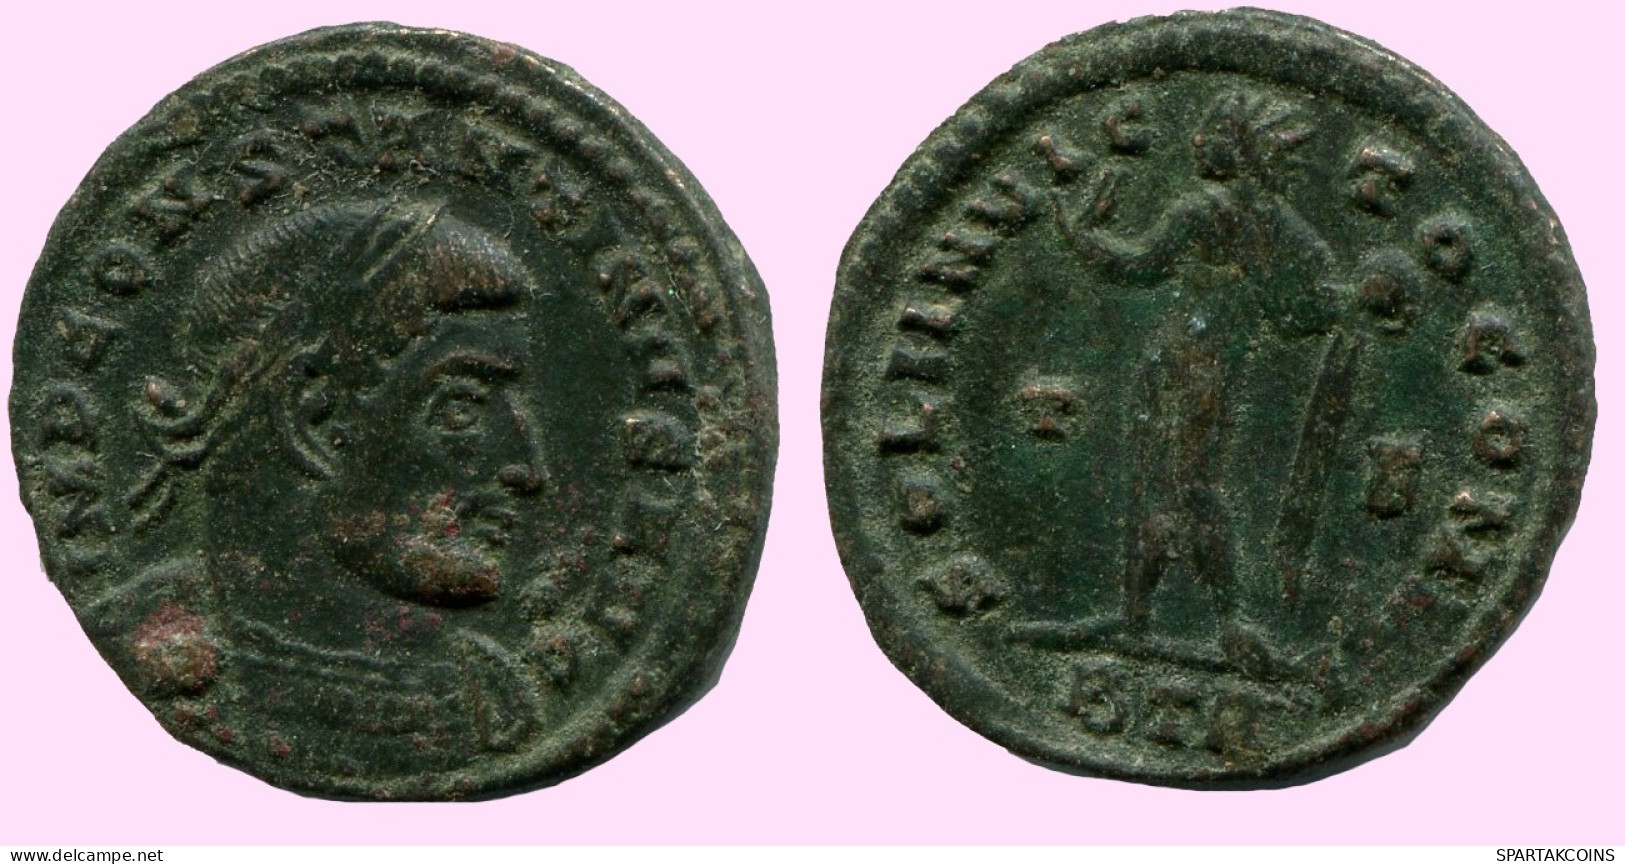 CONSTANTINE I Authentique Original ROMAIN ANTIQUEBronze Pièce #ANC12260.12.F.A - El Imperio Christiano (307 / 363)